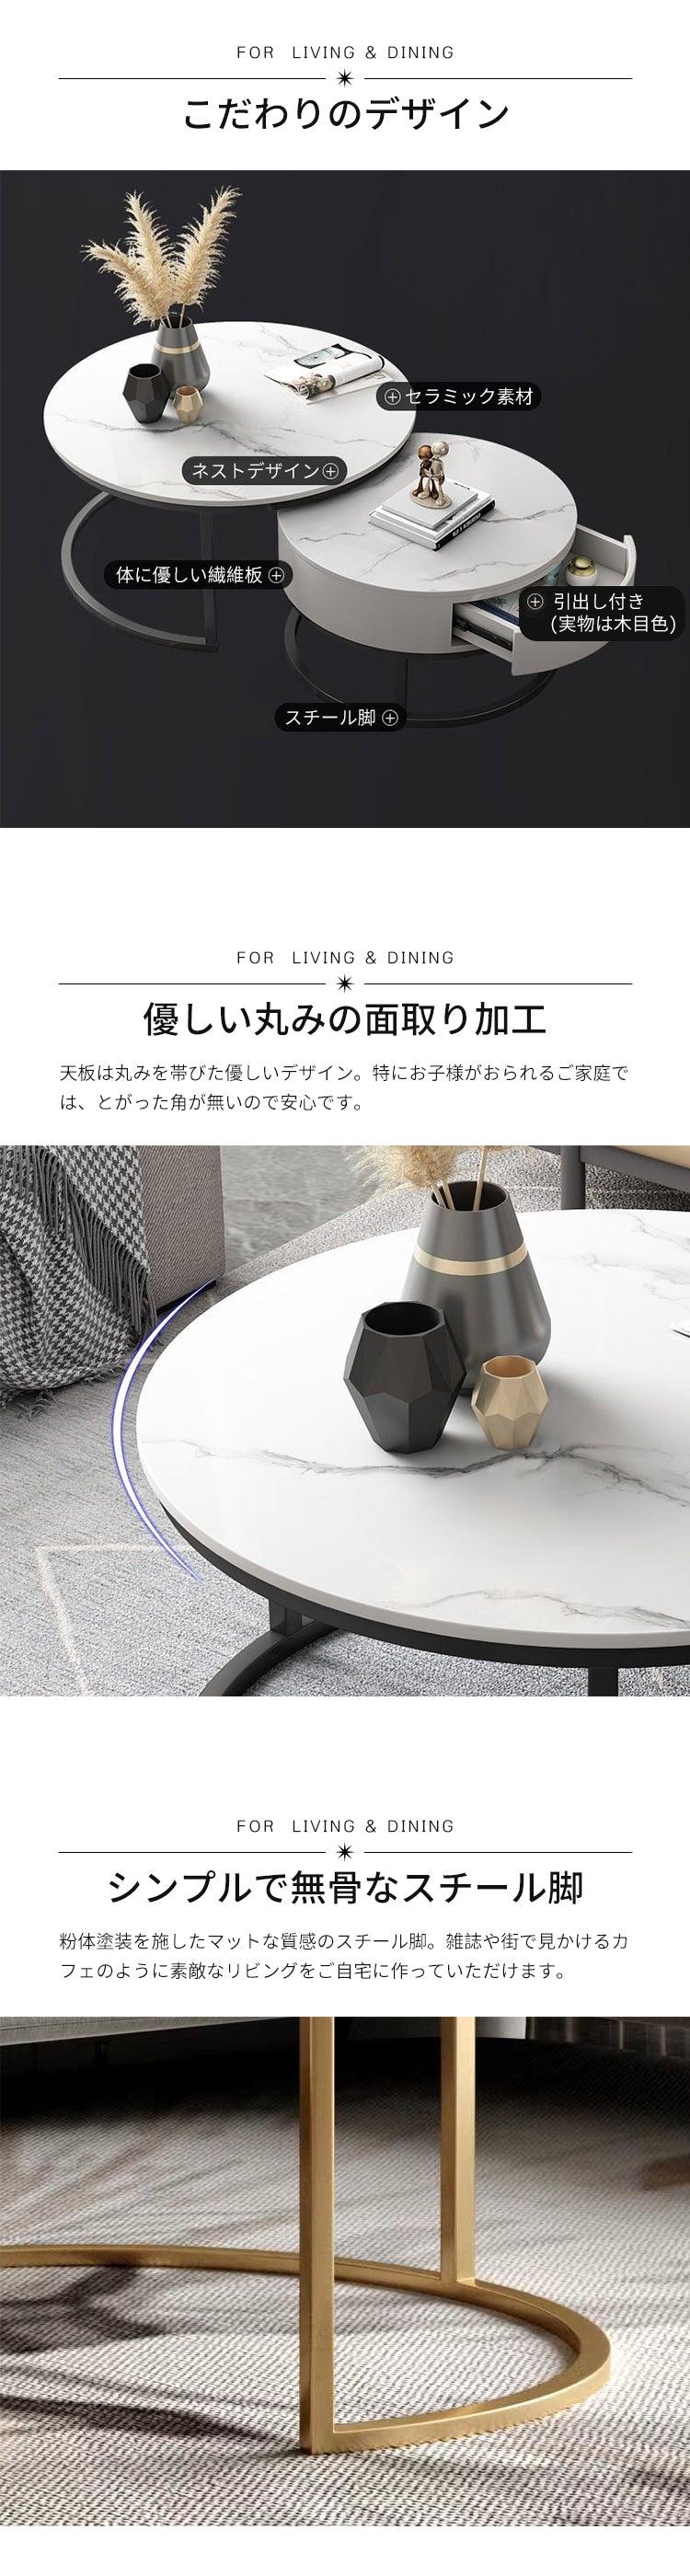 ローテーブル セラミック天板 円型テーブル 入れ子式 組み合わせテーブル 大理石調 mxf-296 - BEST kagu